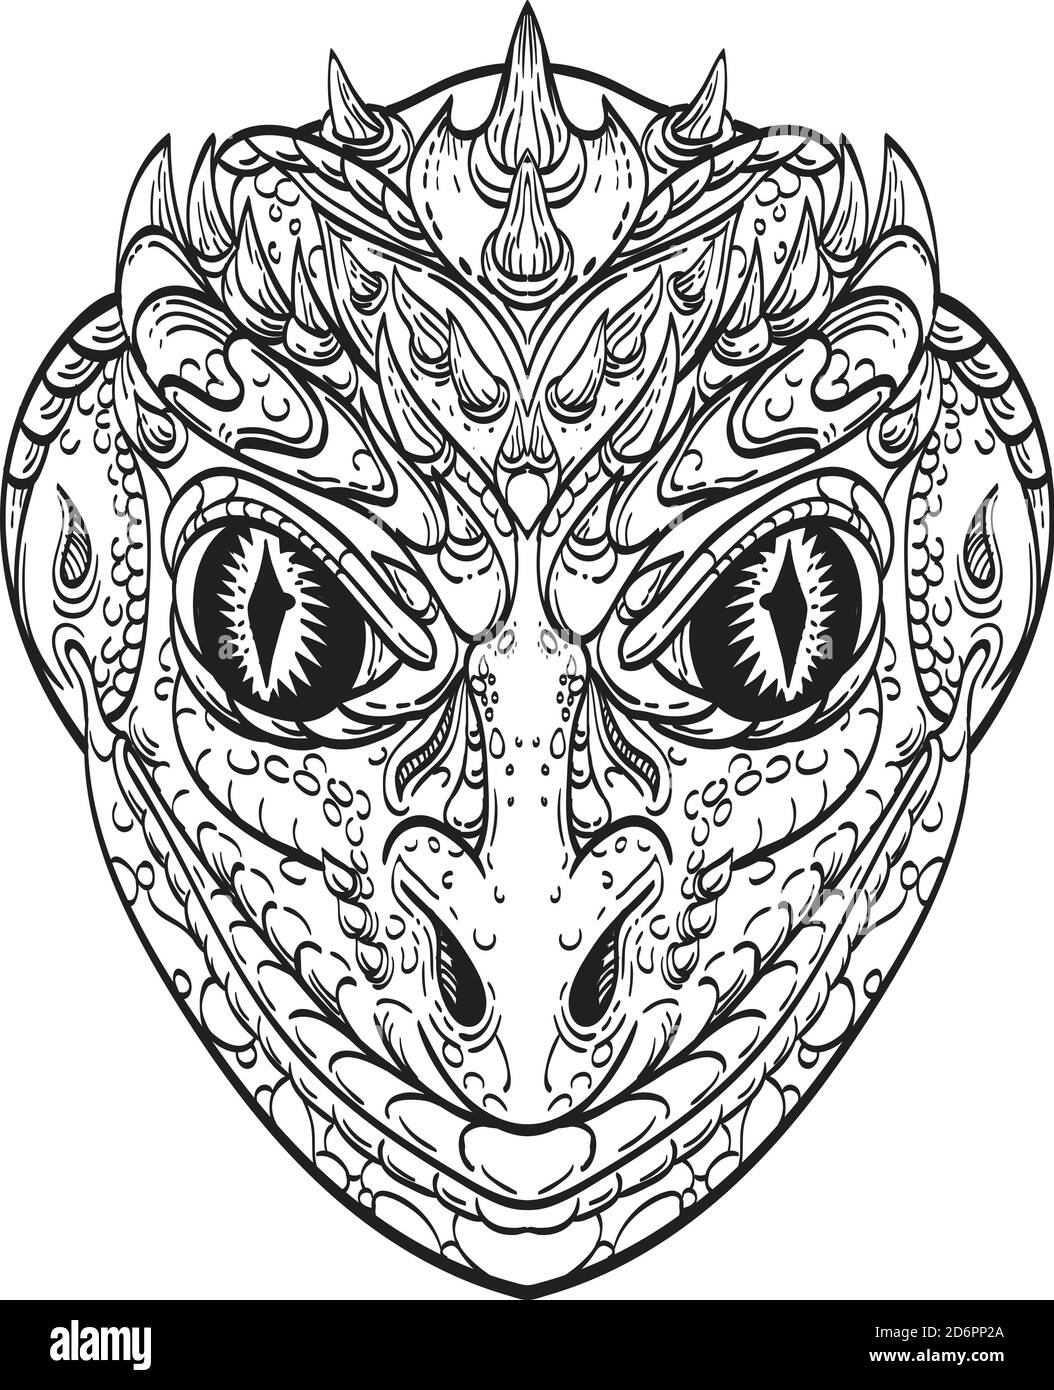 Linie Kunst Zeichnung Illustration Kopf eines reptilianischen humanoiden oder anthropomorphen Reptil, legendäre Kreatur in Mythos und Folklore Teil menschlichen Teil Eidechse Stock Vektor